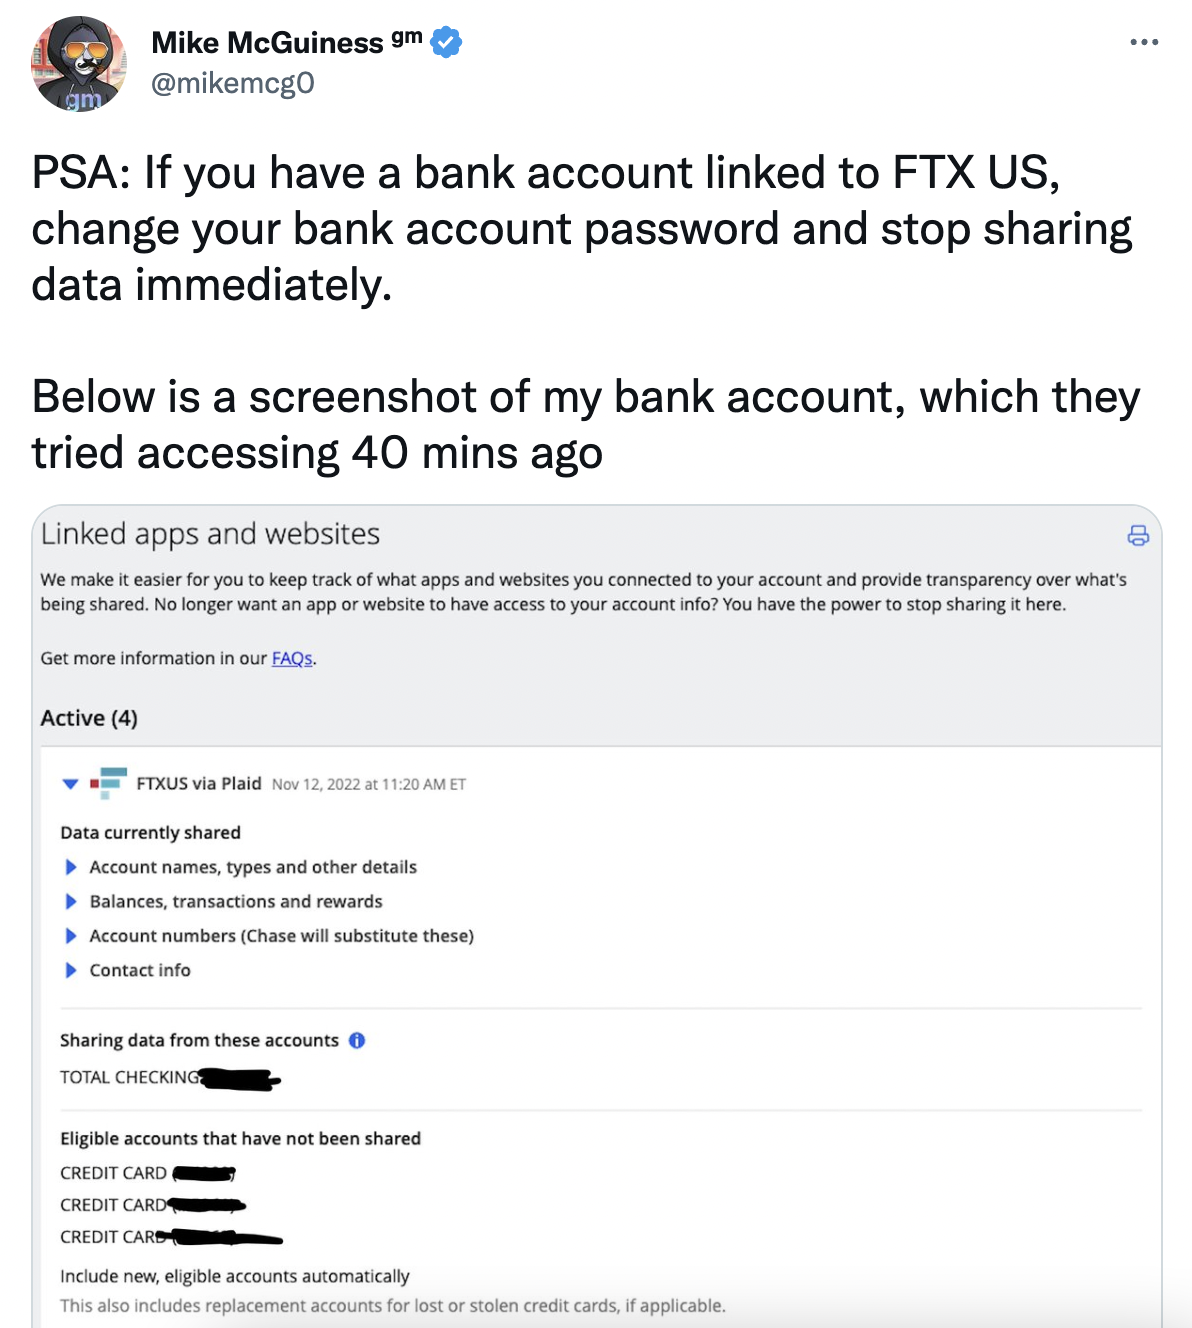 gm.xyz 联创：请修改与 FTX US 关联银行账户密码并停止共享数据